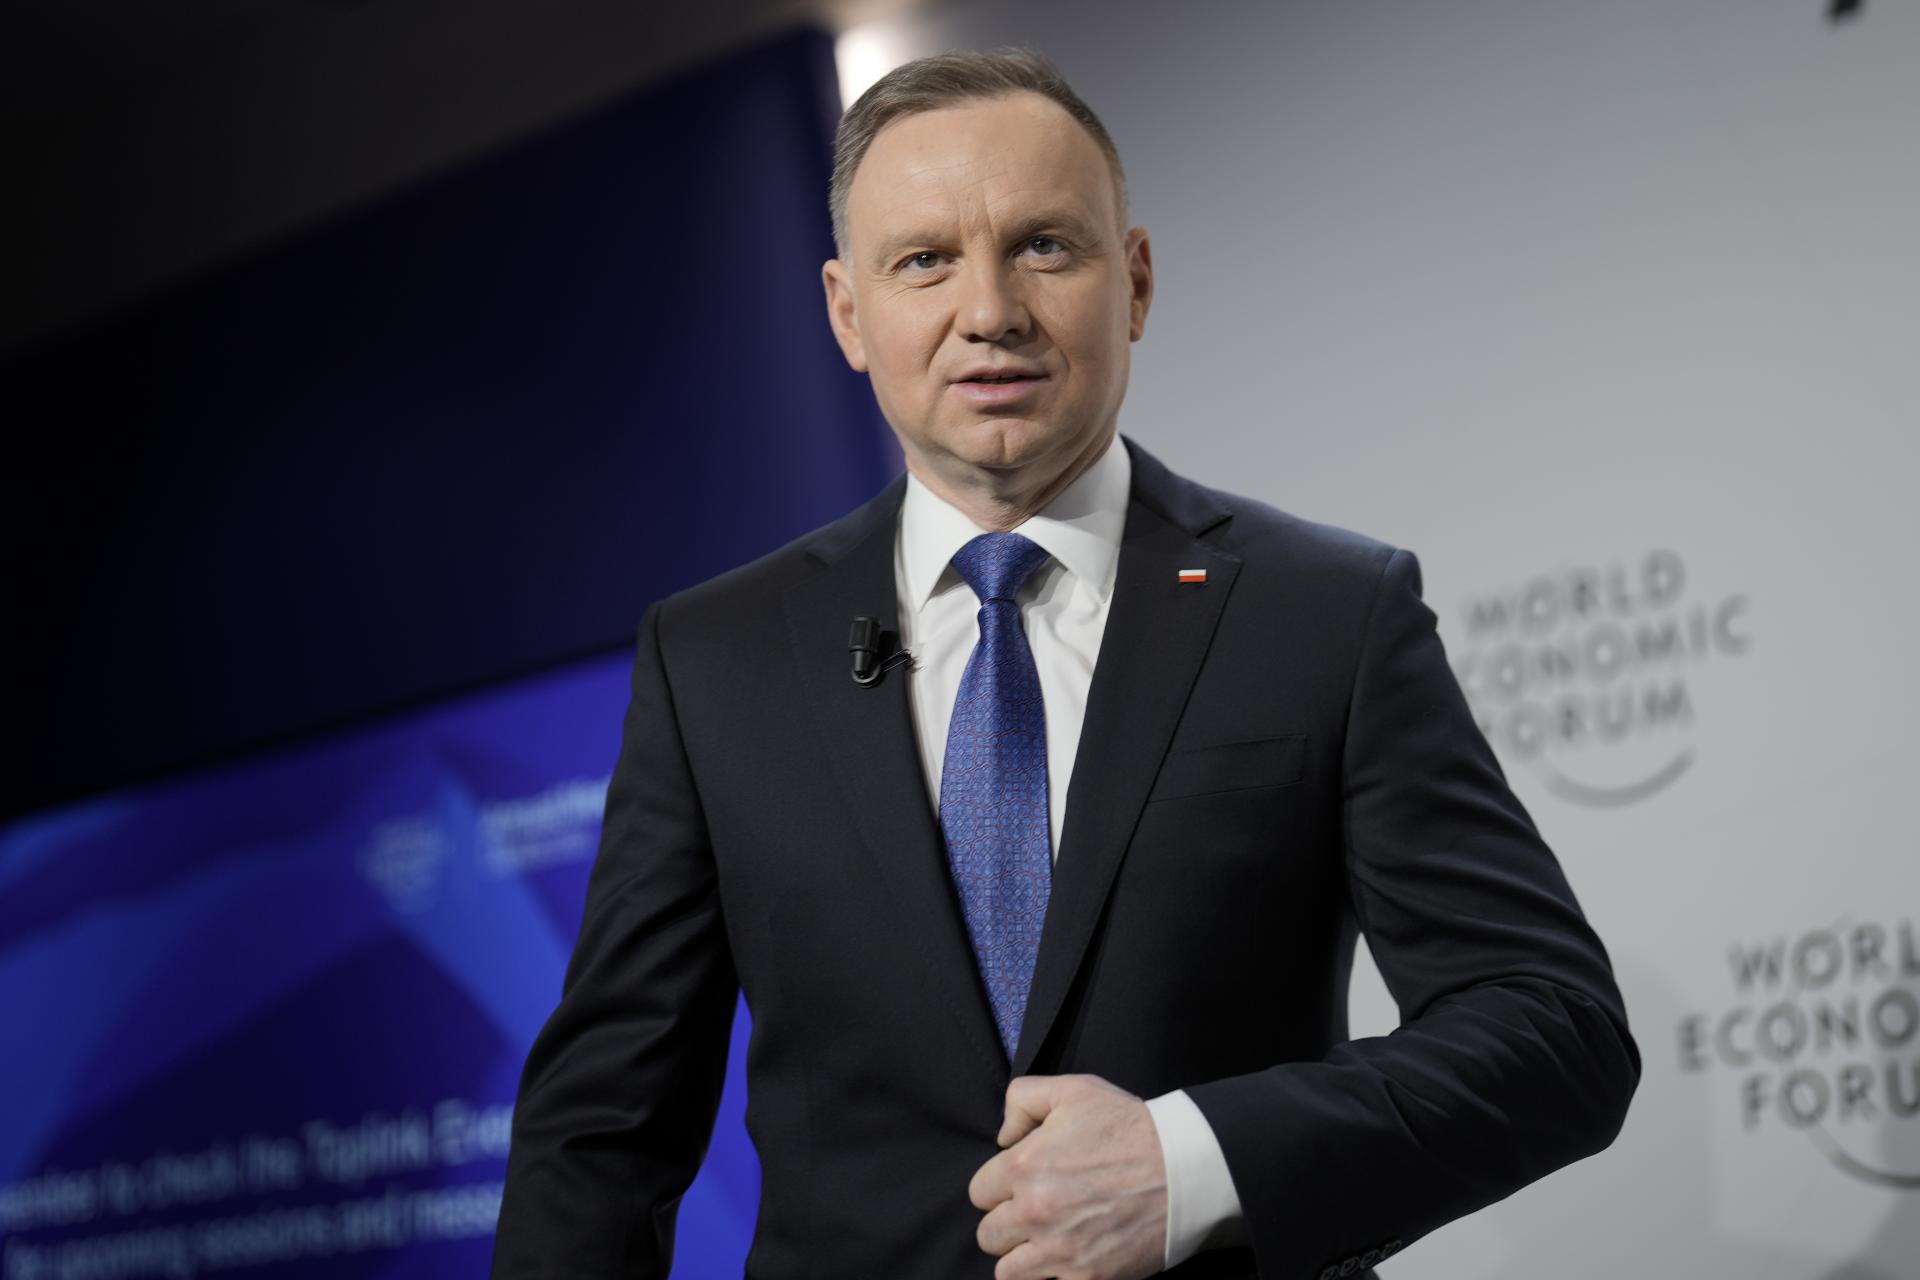 Ukrajina potrebuje viac zbraní, uviedol v Davose poľský prezident a zdôraznil dôležitosť moderného vybavenia